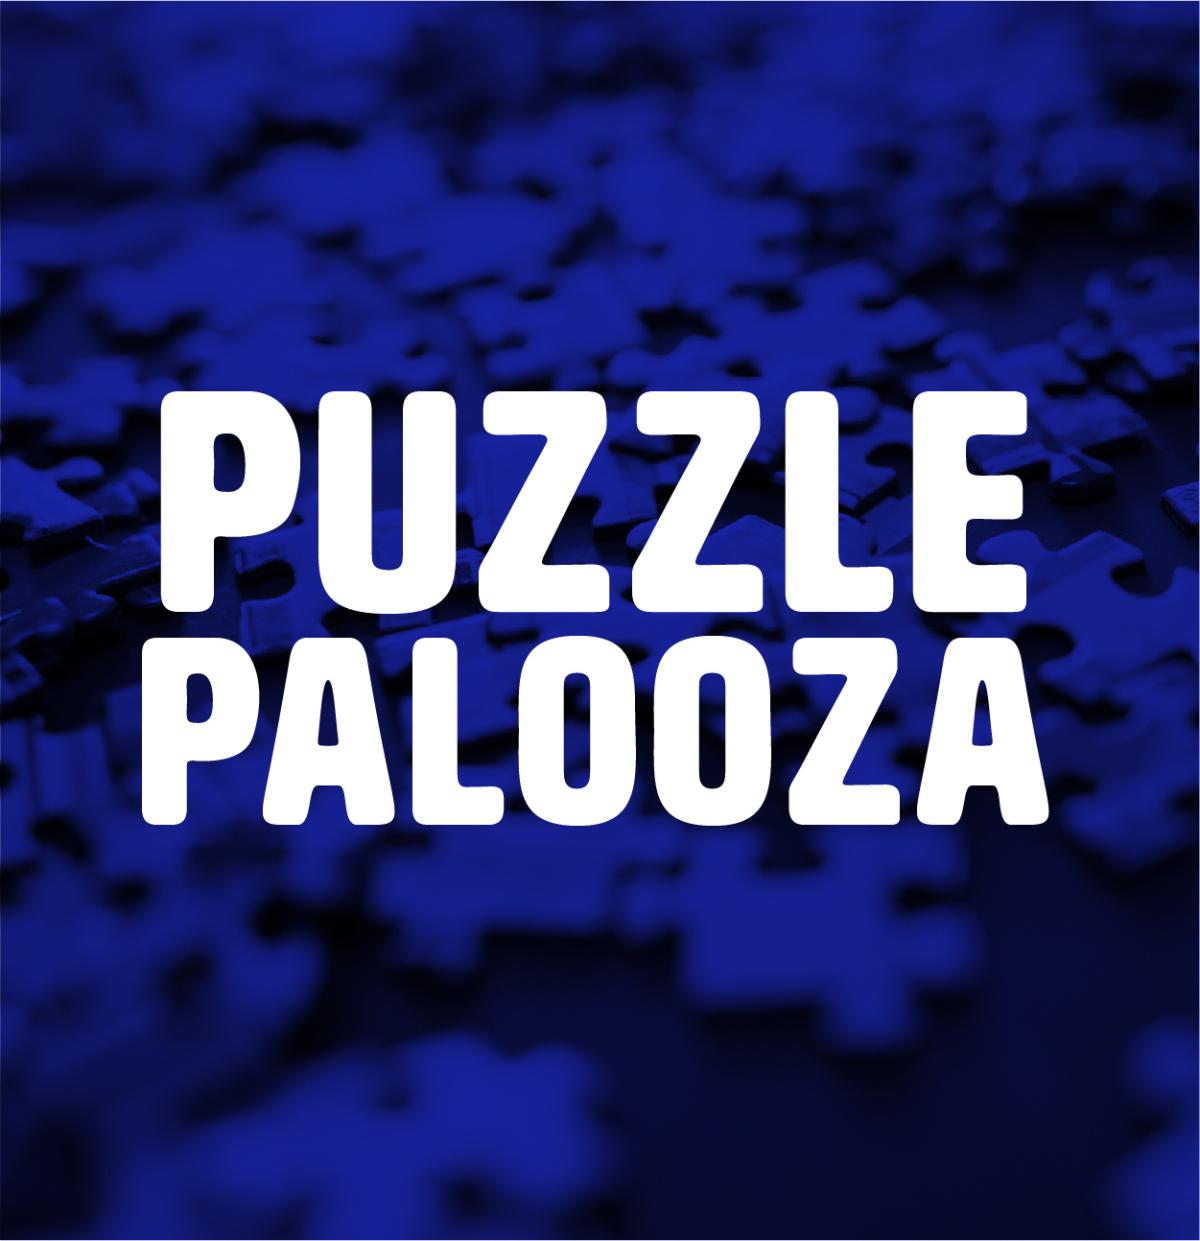 Puzzle Palooza